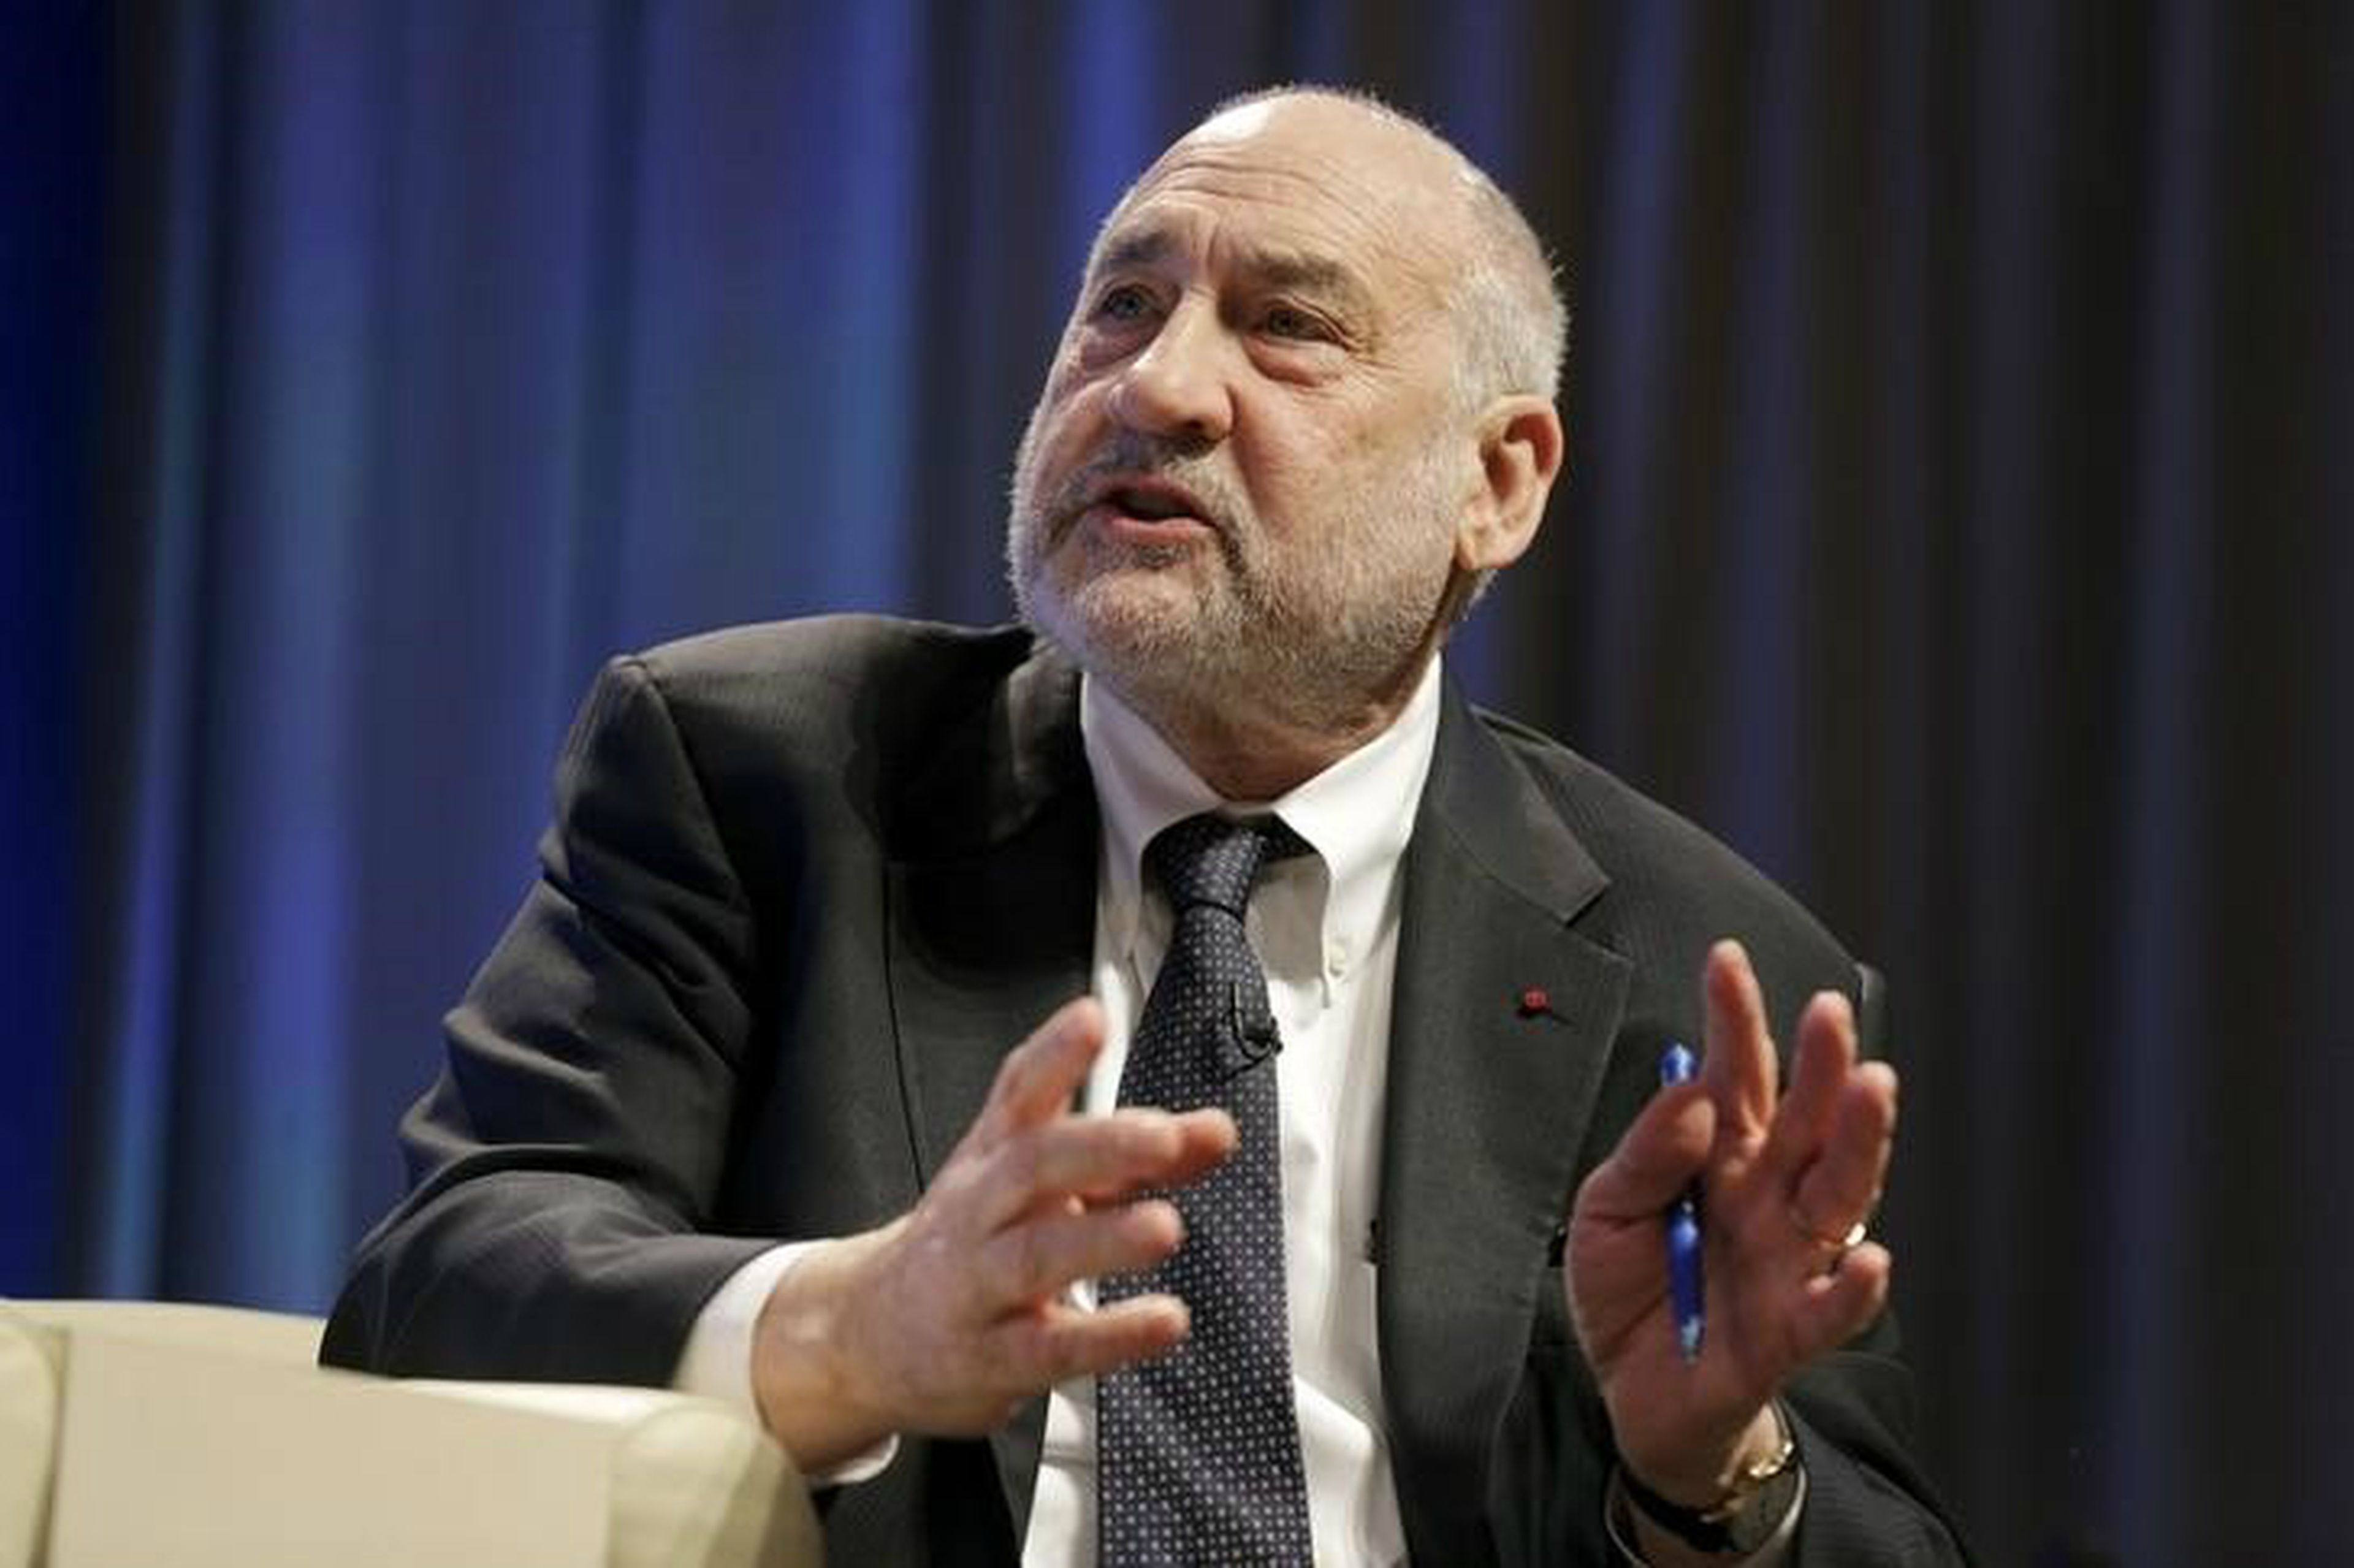 El economista Joseph Stiglitz interviene sobre la importancia de reforzar la política fiscal durante en encuentro del Banco Mundial en Washington (EE. UU.) durante la primavera de 2016.